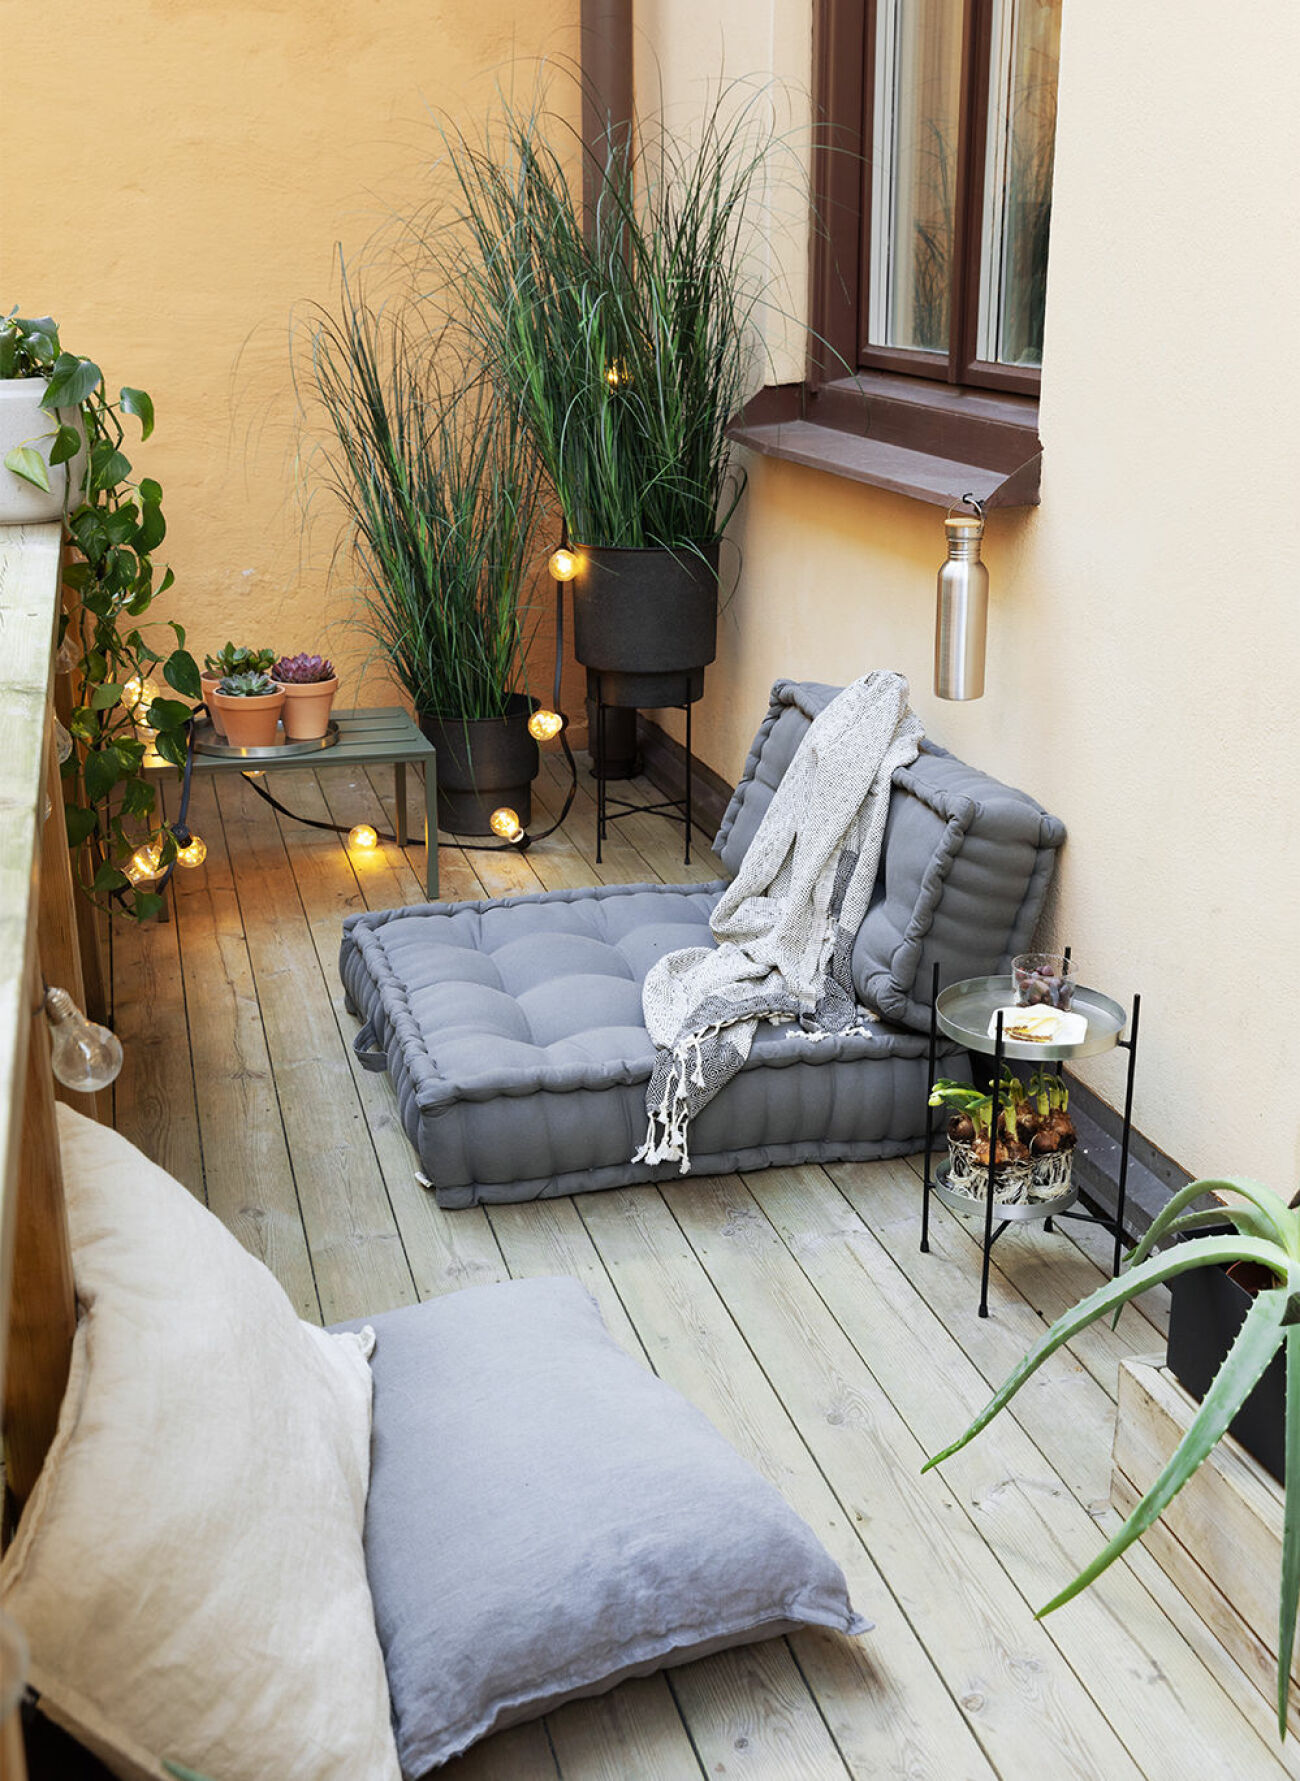 Mysig balkong med låga möbler och möbler på golvet